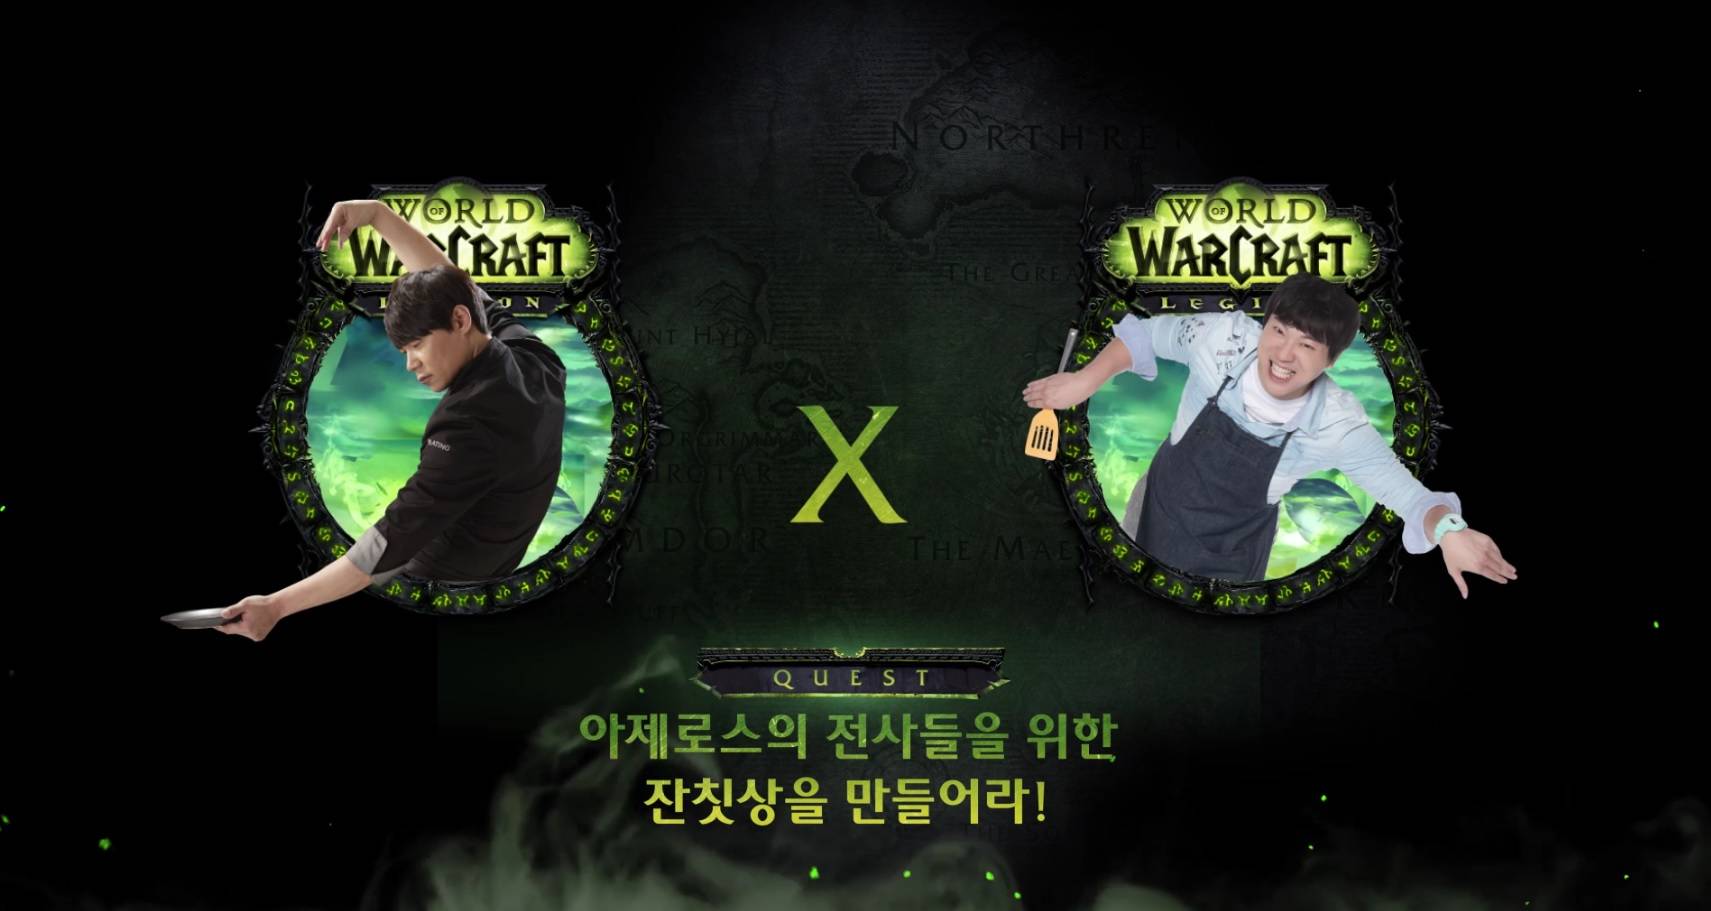 В Южной Корее запустили новое кулинарное шоу. Там готовят блюда из World of Warcraft